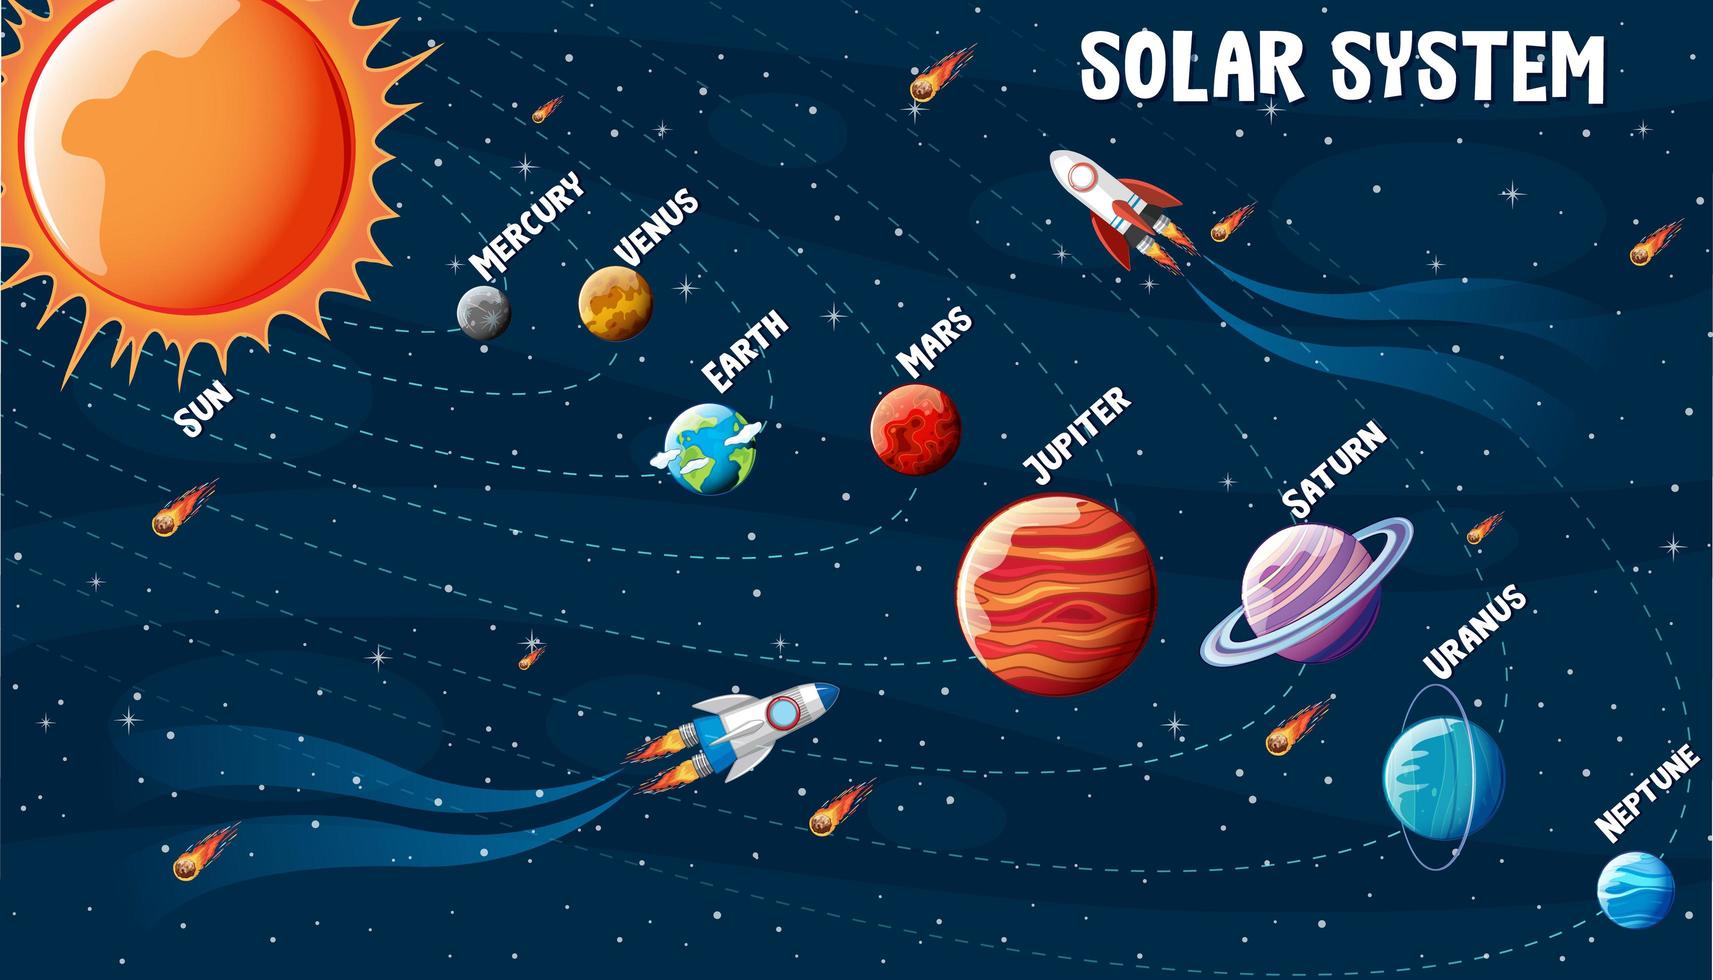 planeten van het zonnestelsel infographic vector